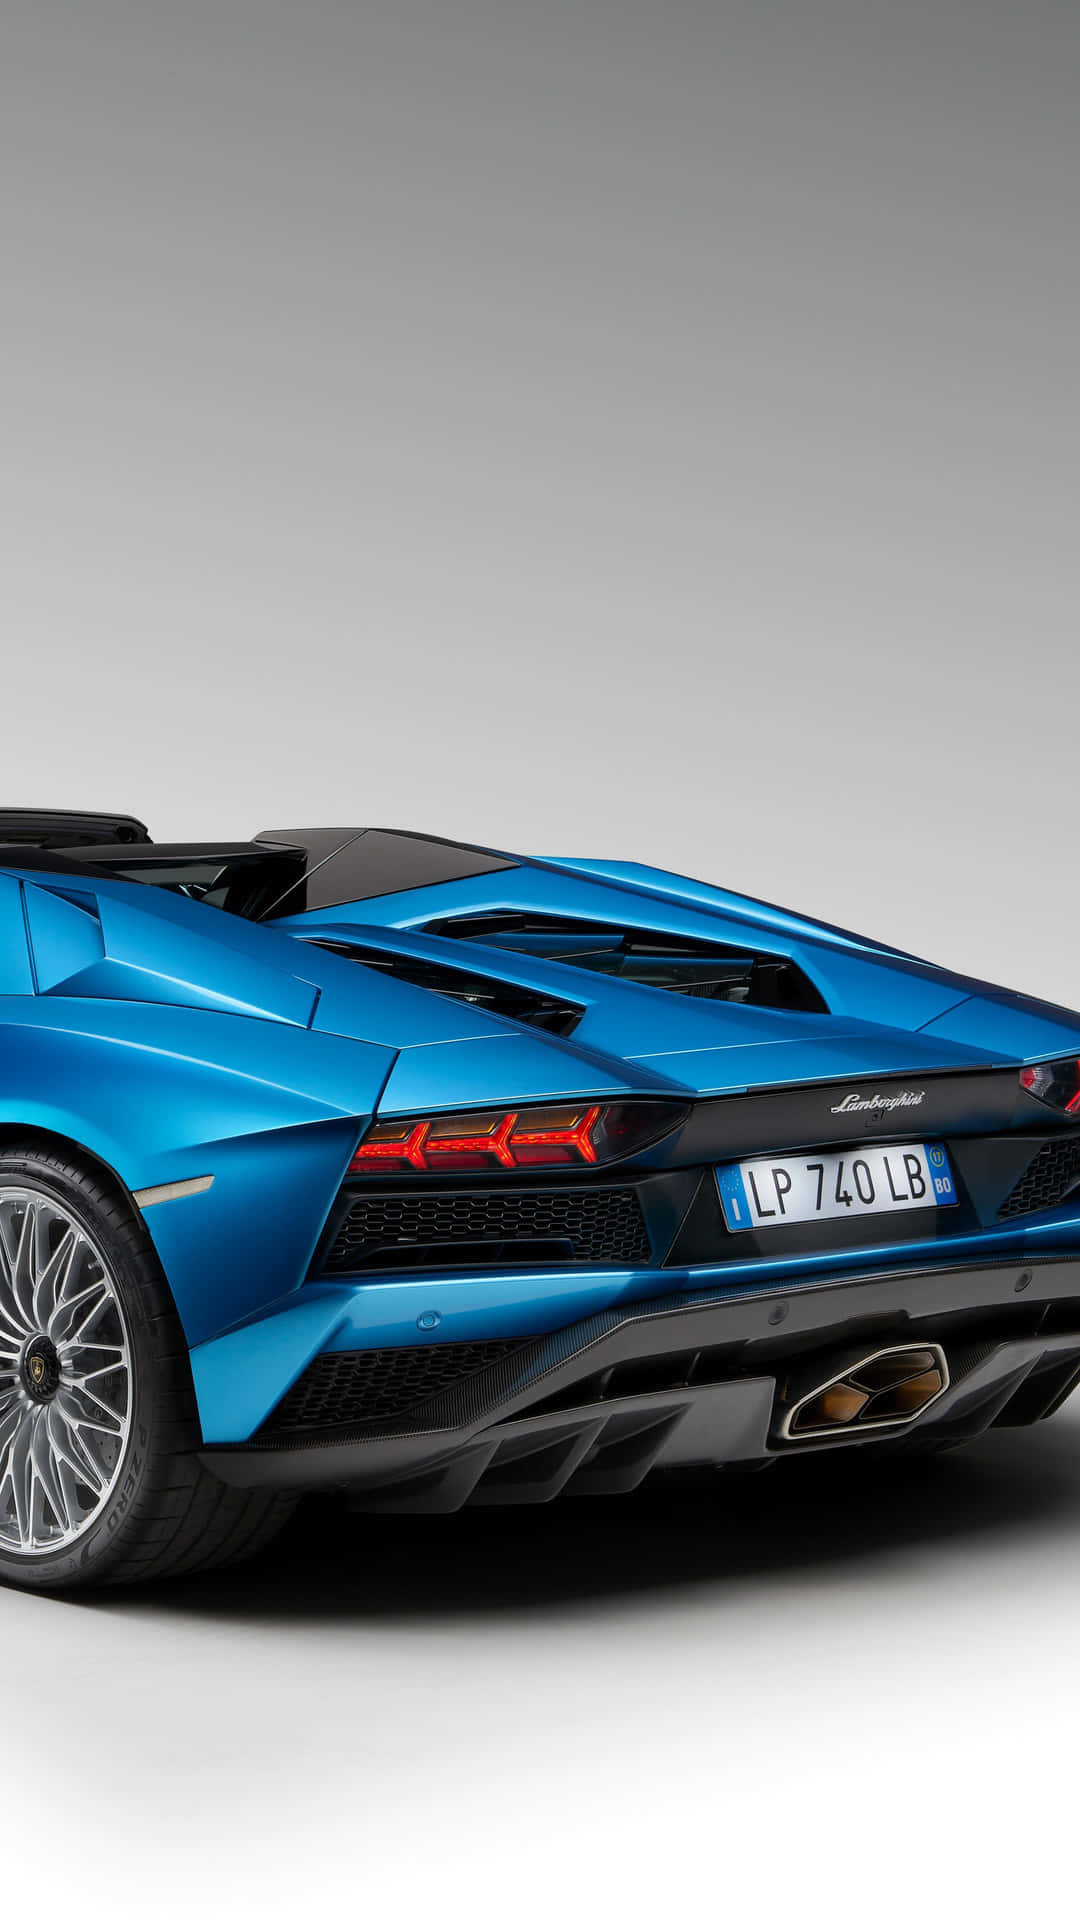 Partetrasera De Un Iphone Azul Lamborghini. Fondo de pantalla